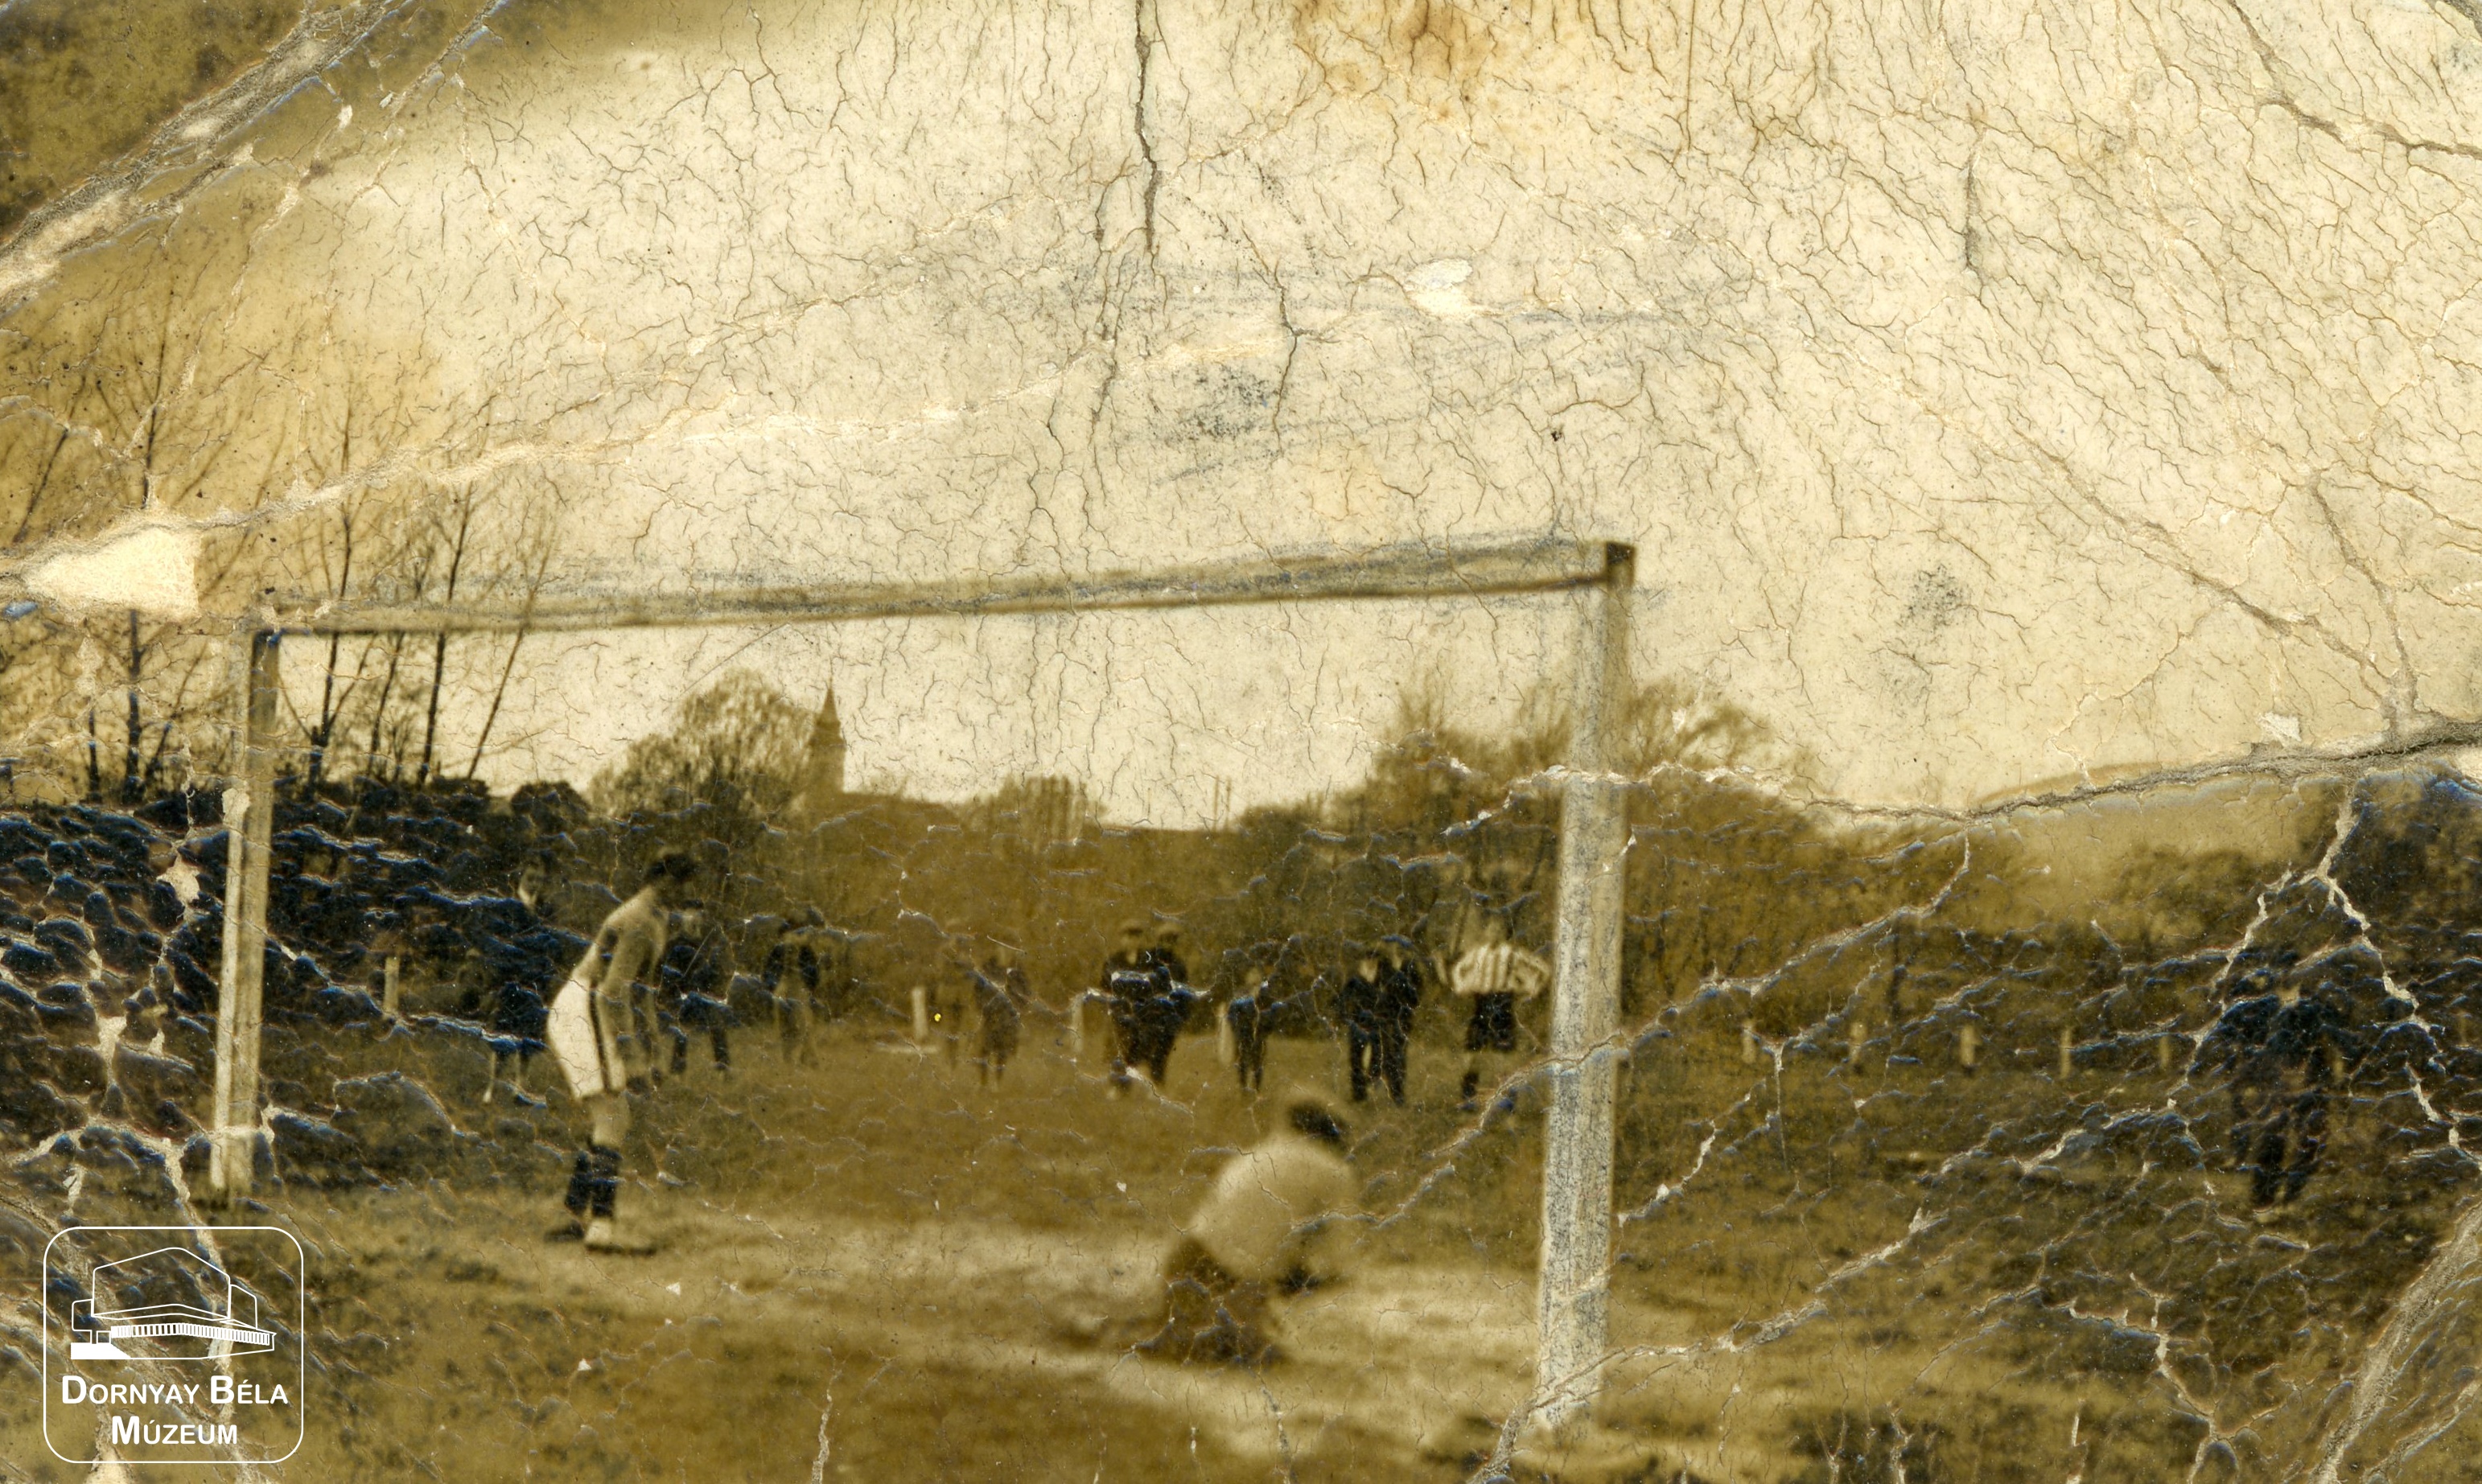 A Nógrádverőcei Reménység Sport Egyesületének labdarúgó mérkőzése (Dornyay Béla Múzeum, Salgótarján CC BY-NC-SA)